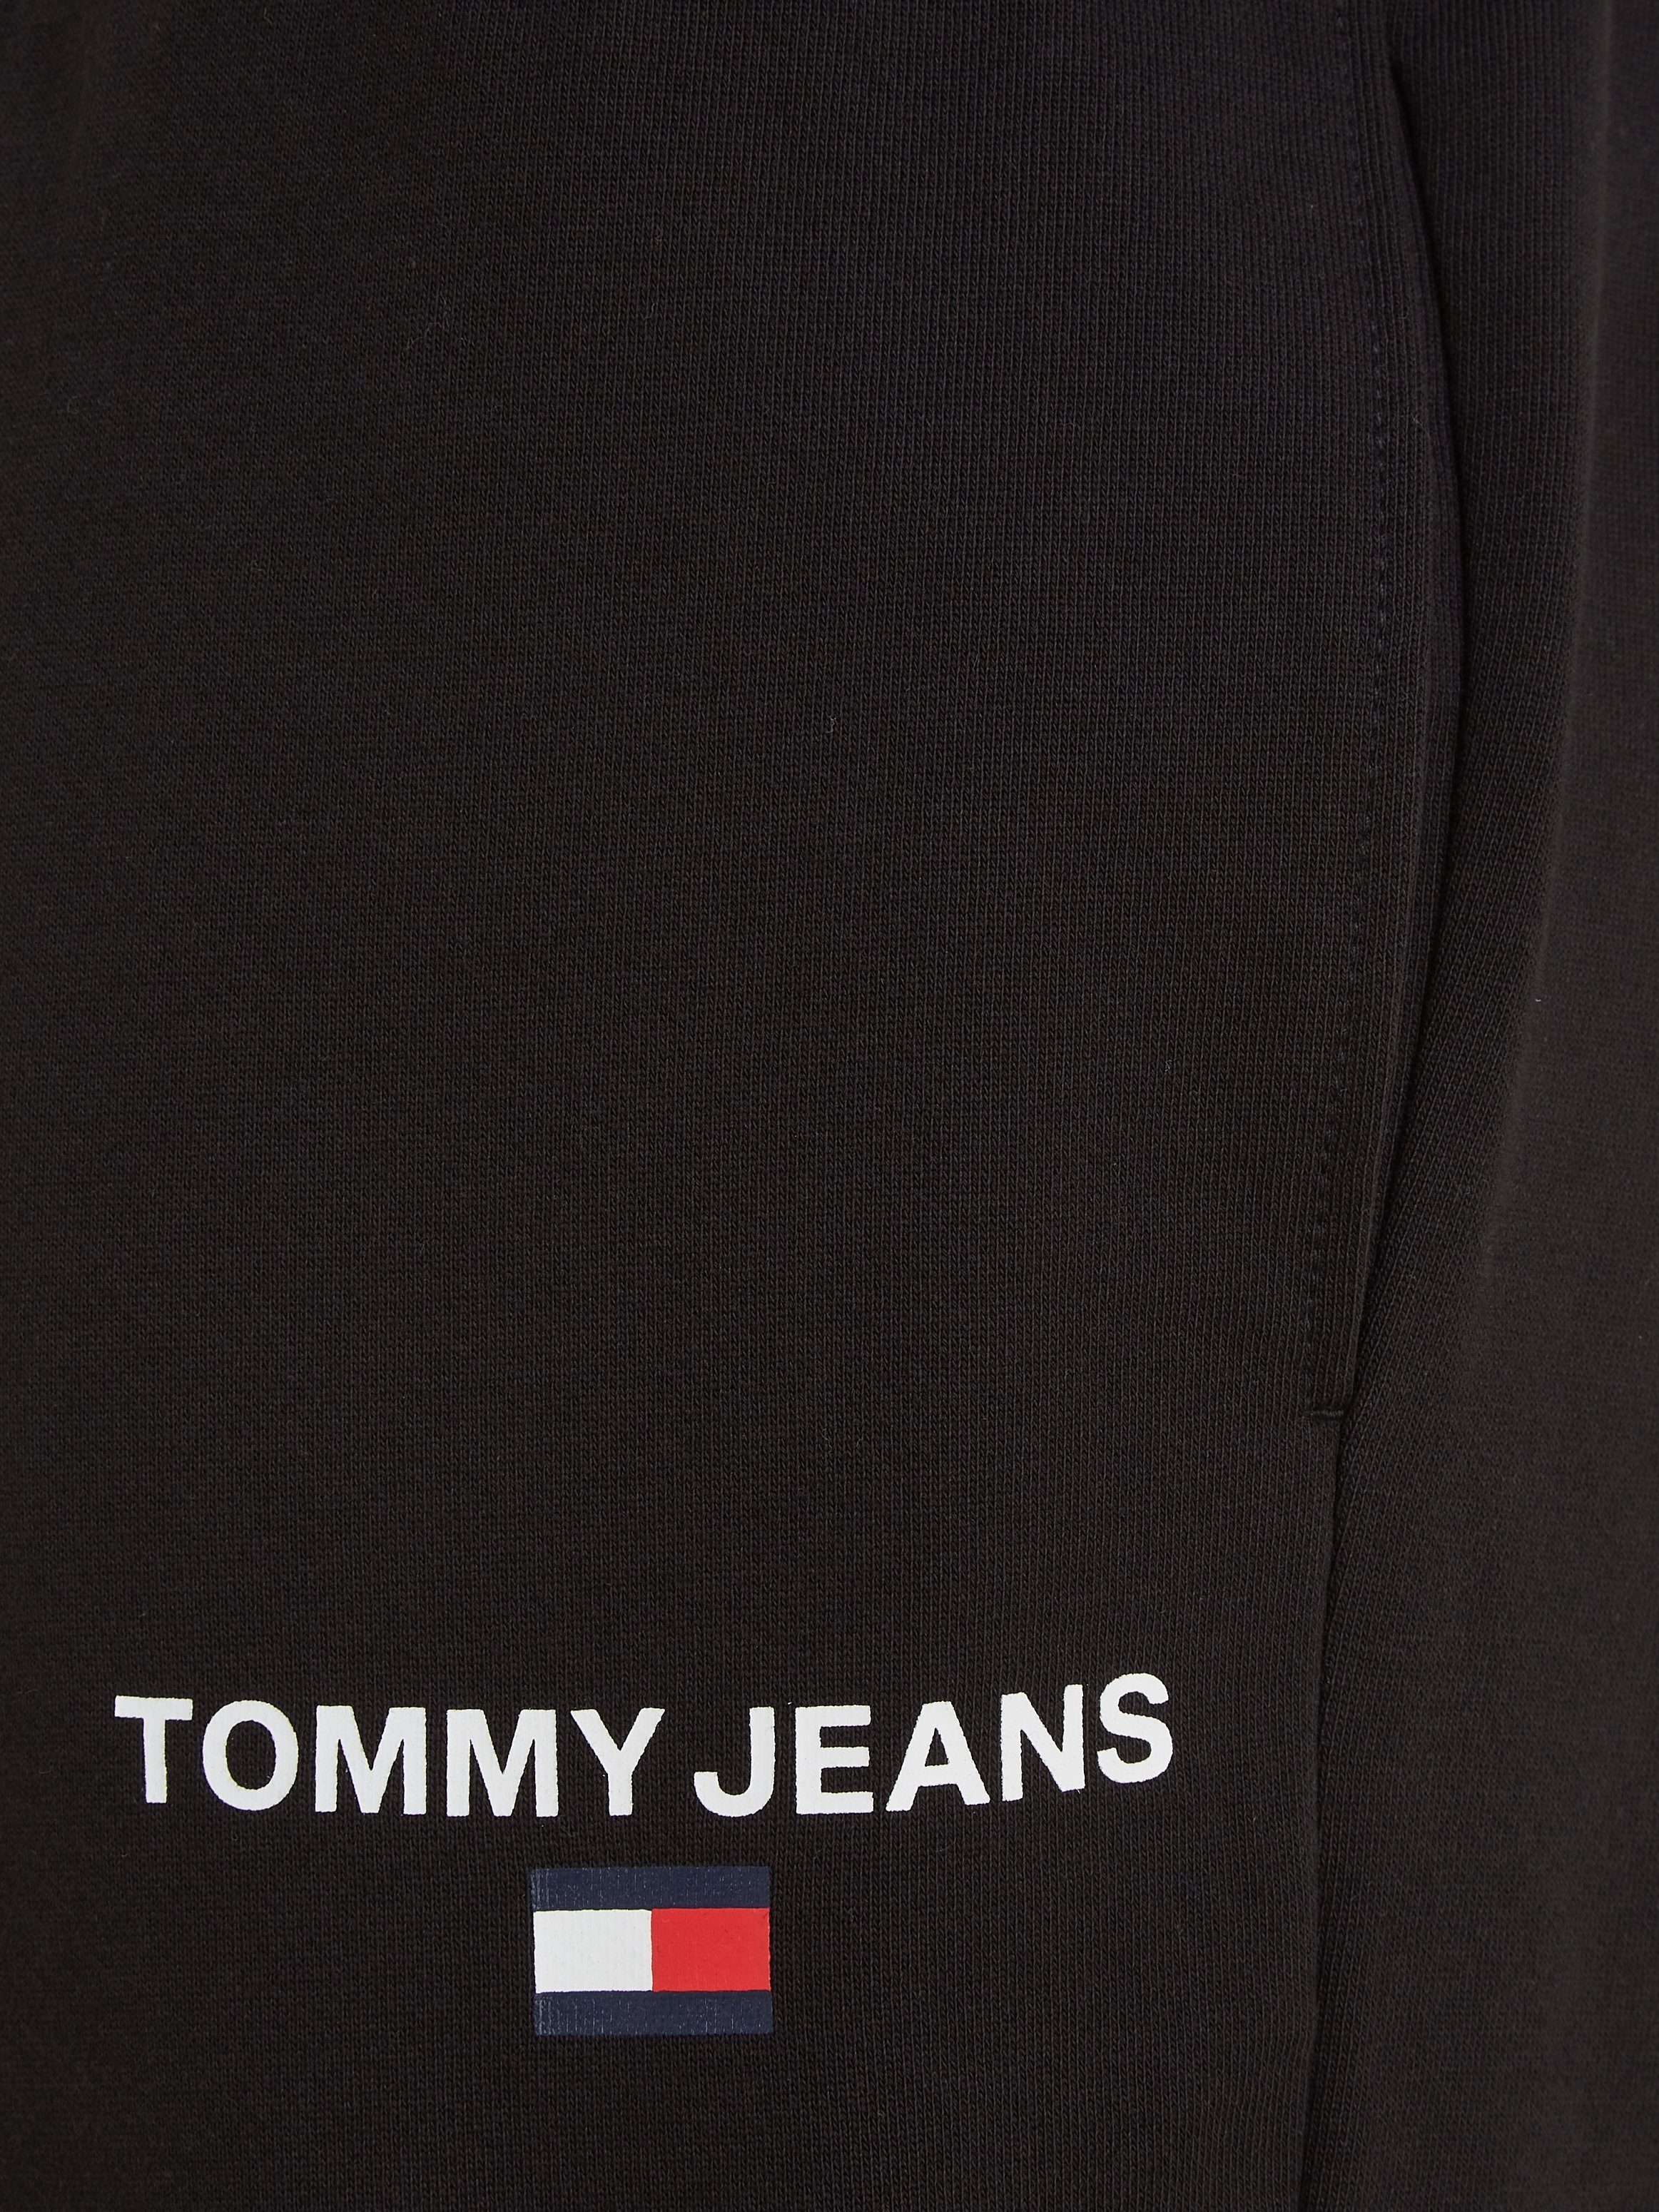 JOGGER ENTRY GRPHC Tommy Jeans Sweathose REG PLUS TJM Plus